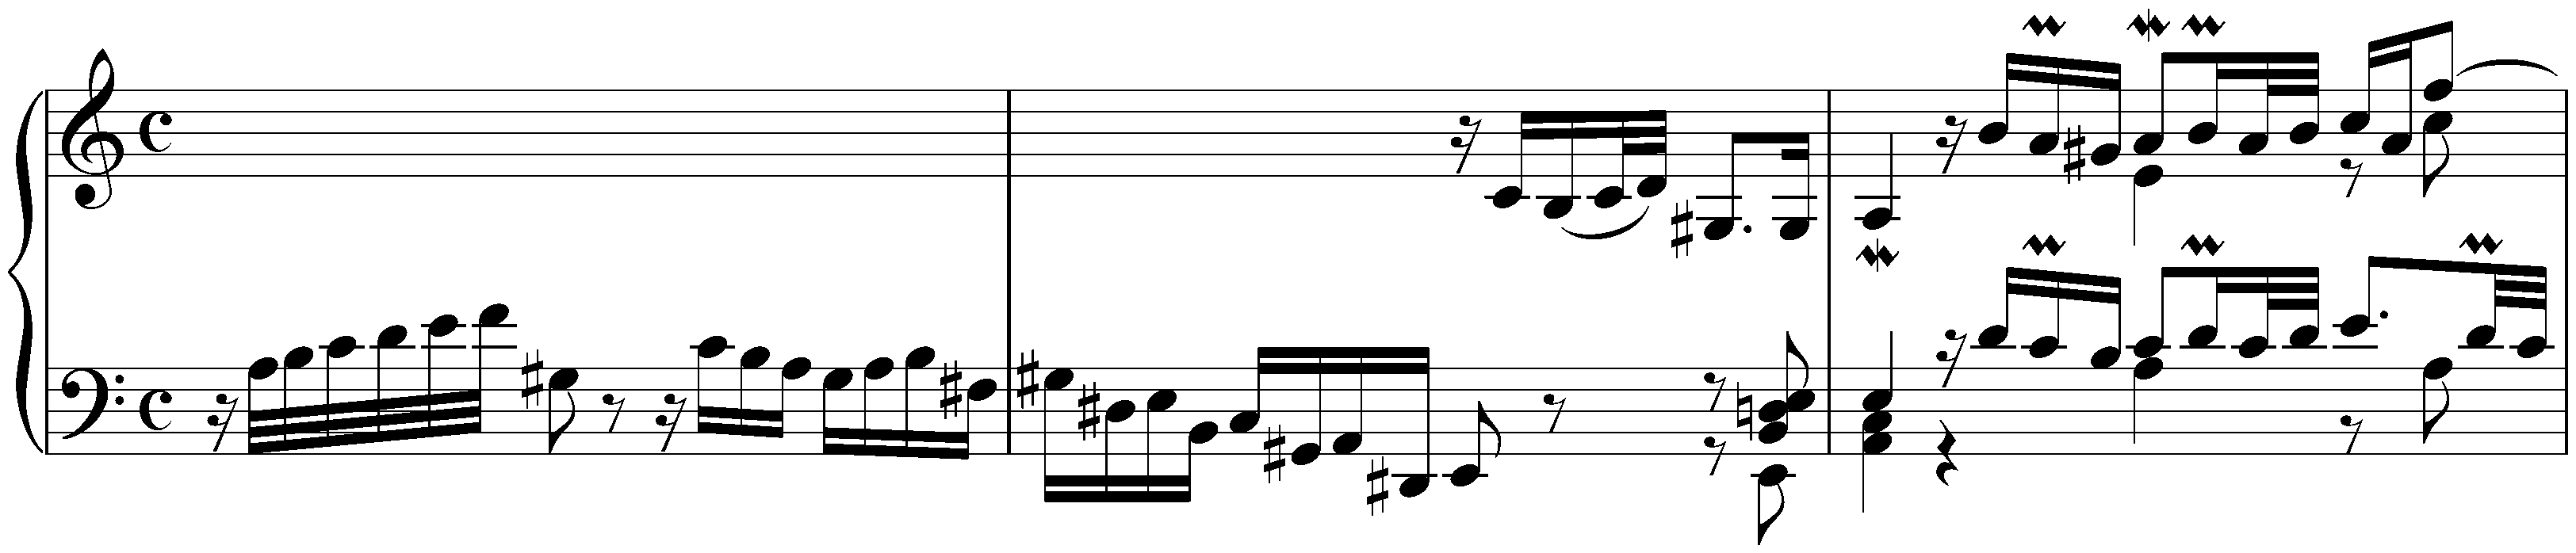 Prelude and Fugue in A minor, BWV 895; 1. Prelude